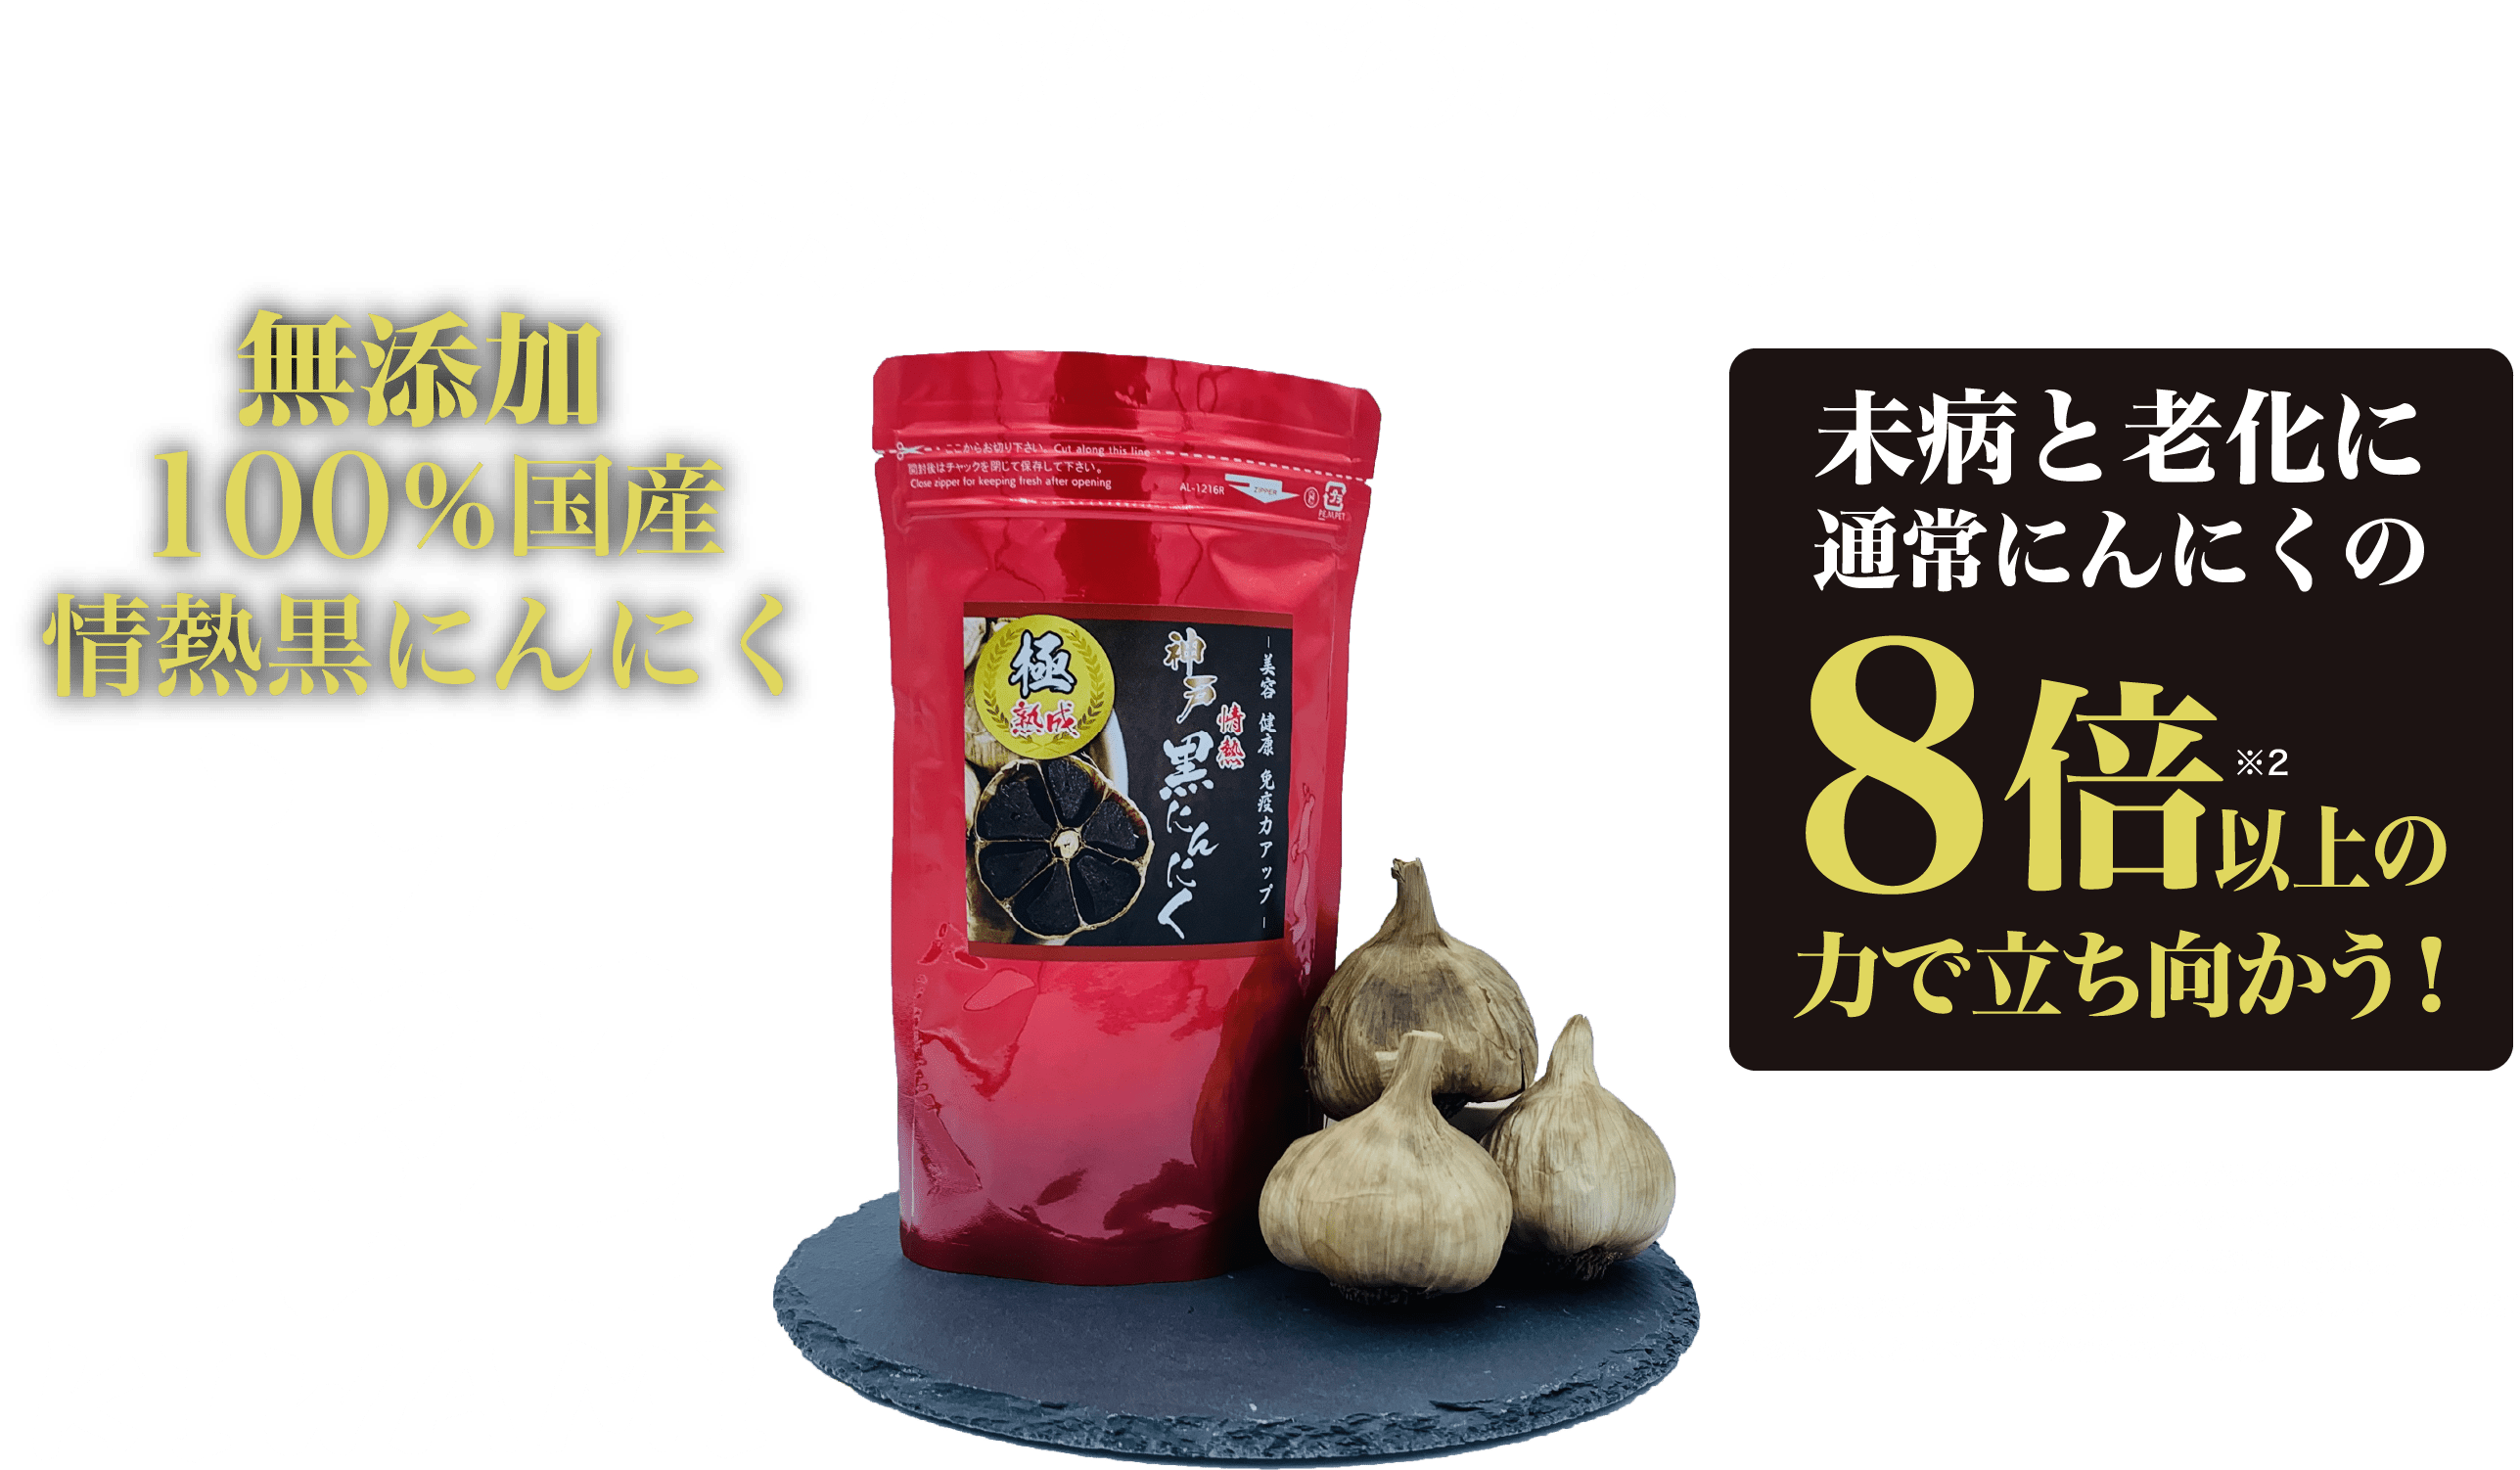 公式 神戸情熱黒にんにく 100 国産の熟成黒にんにく専門店ライフパワーのオンラインショップ